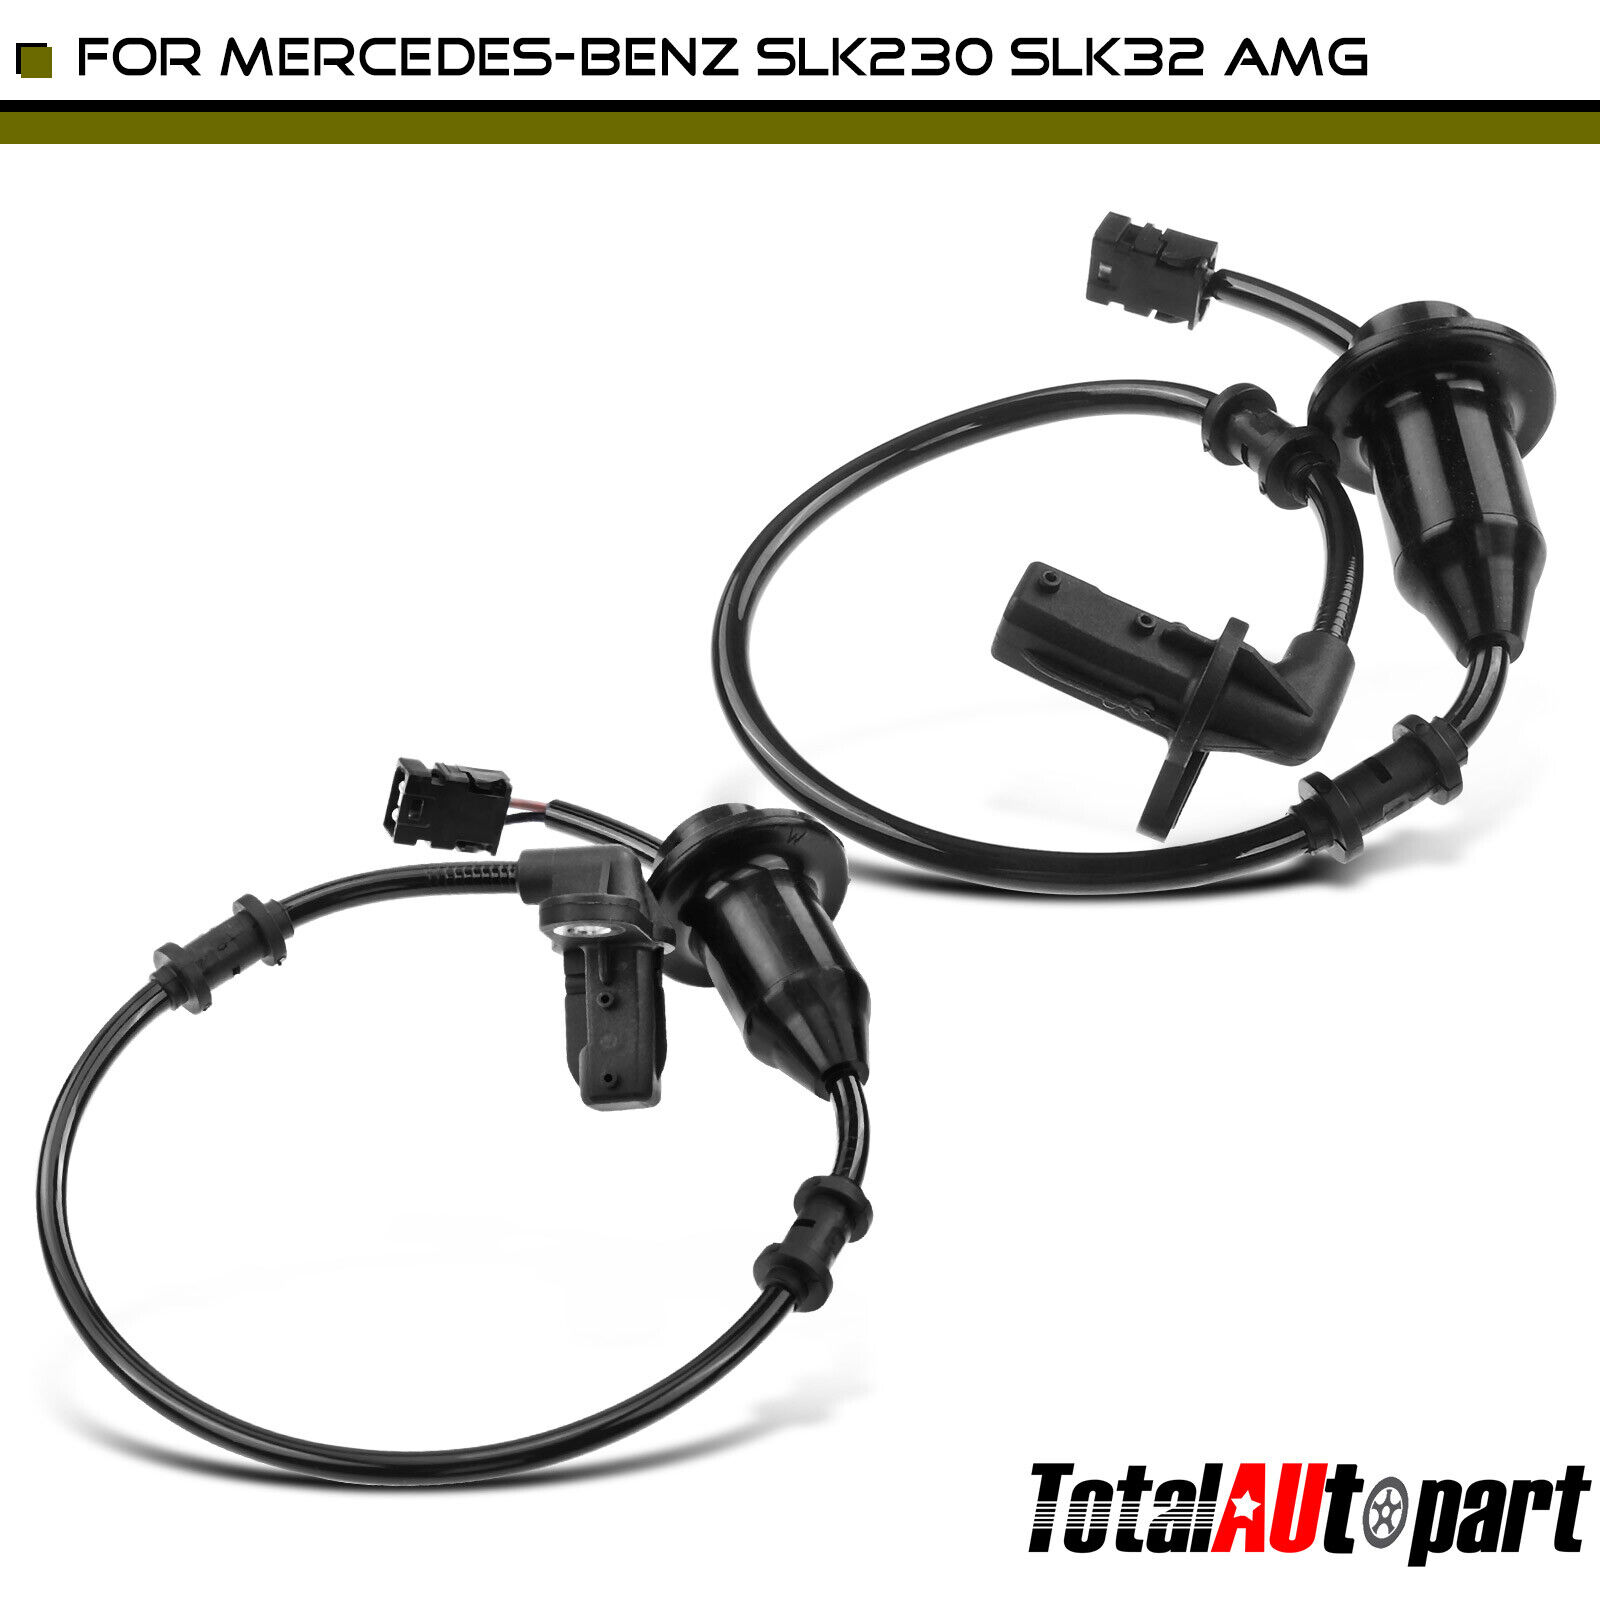 2Pcs ABS Wheel Speed Sensor for Mercedes-Benz SLK230 SLK32 AMG Rear Left & Right